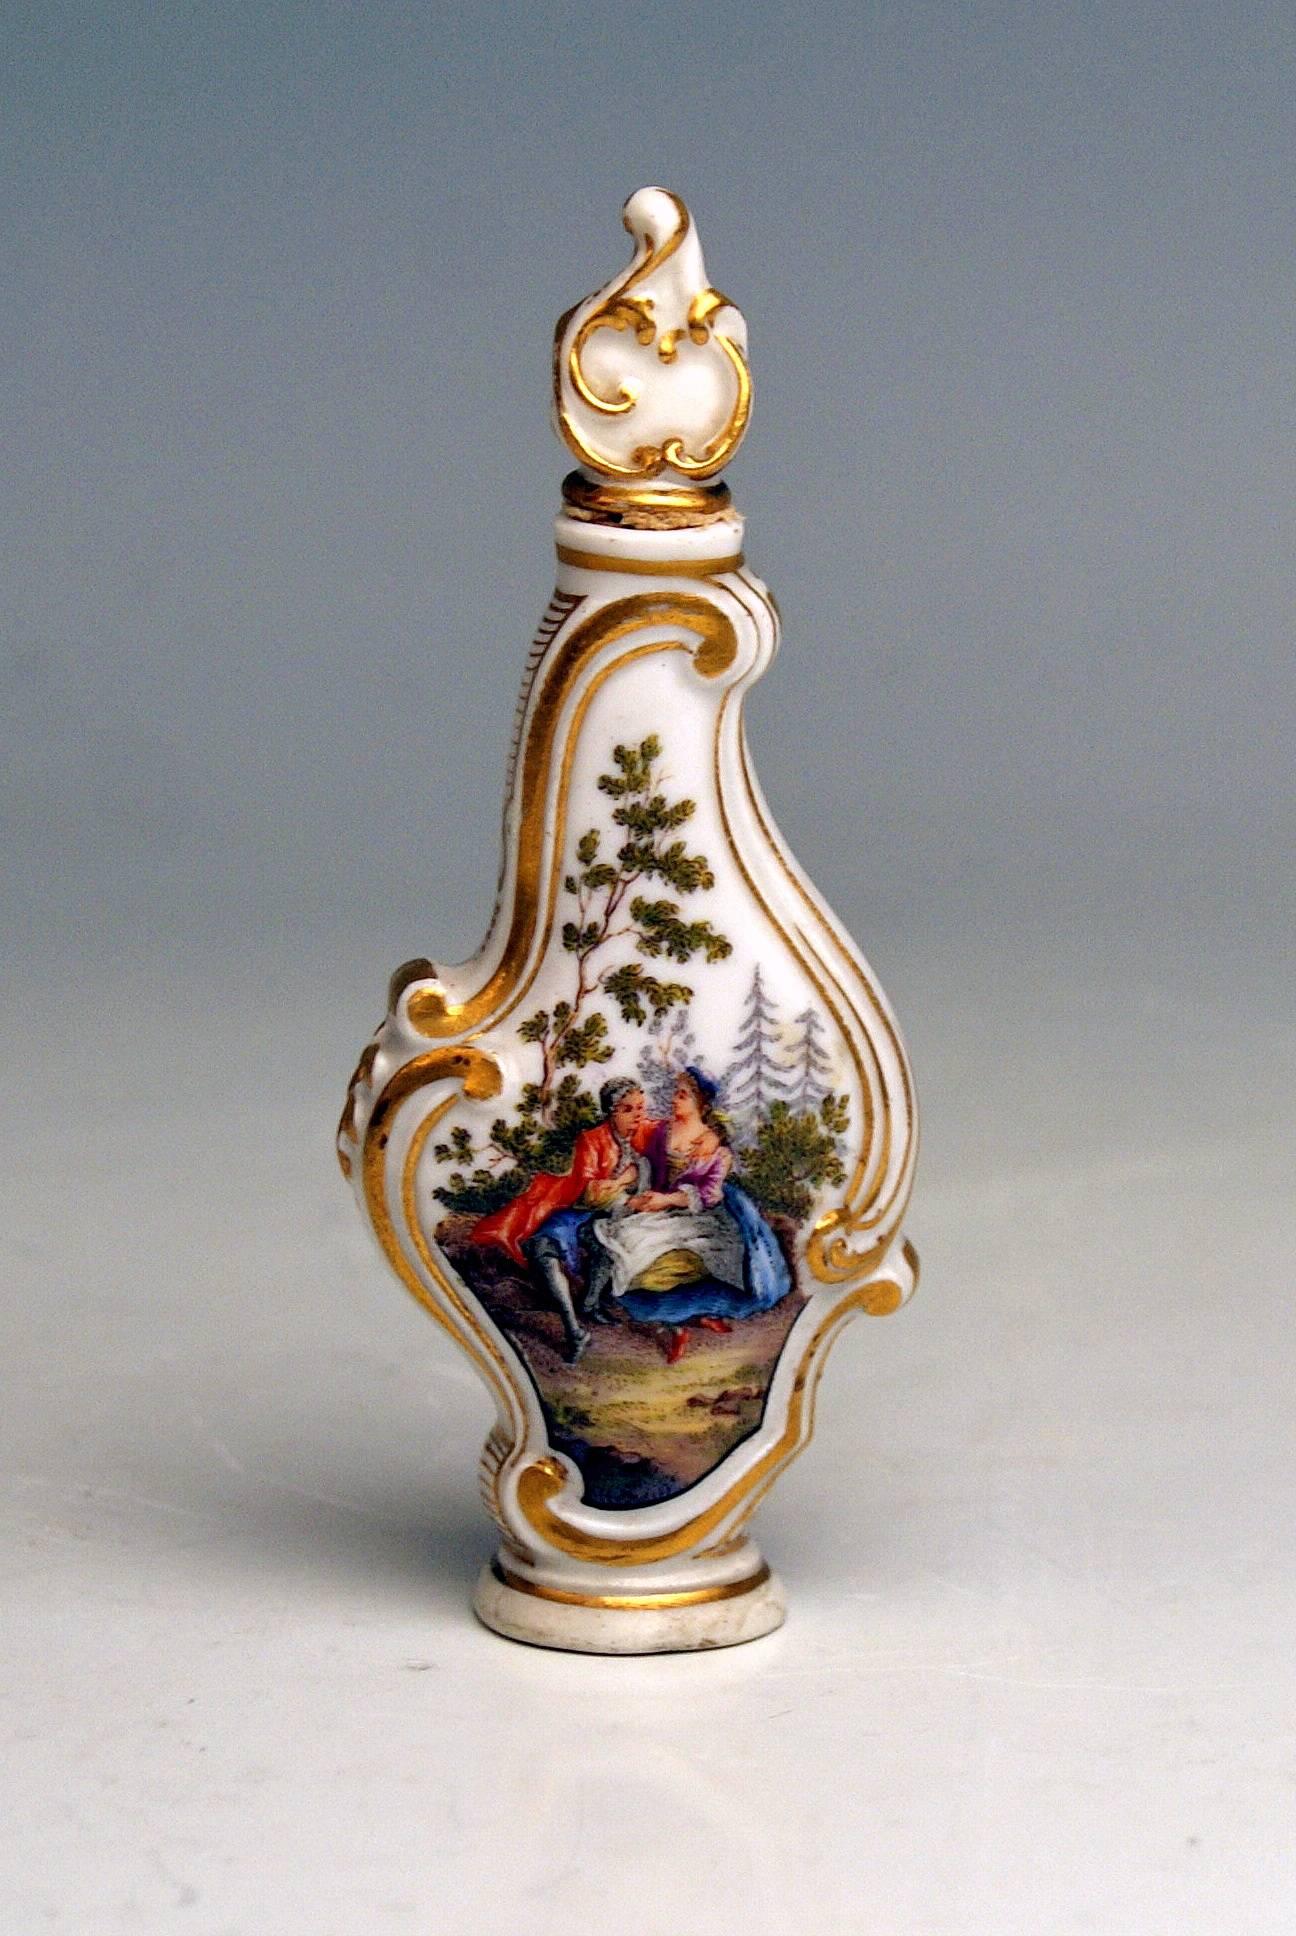 Flacon de parfum rare de Meissen en miniature
Remarque : Abondamment peint avec des scènes de Watteau !

Fabrication : Meissen 
Datation : fabriqué pendant la première moitié du 19e siècle (vers 1850)
Poinçonné : Marque de Meissen avec pommeaux